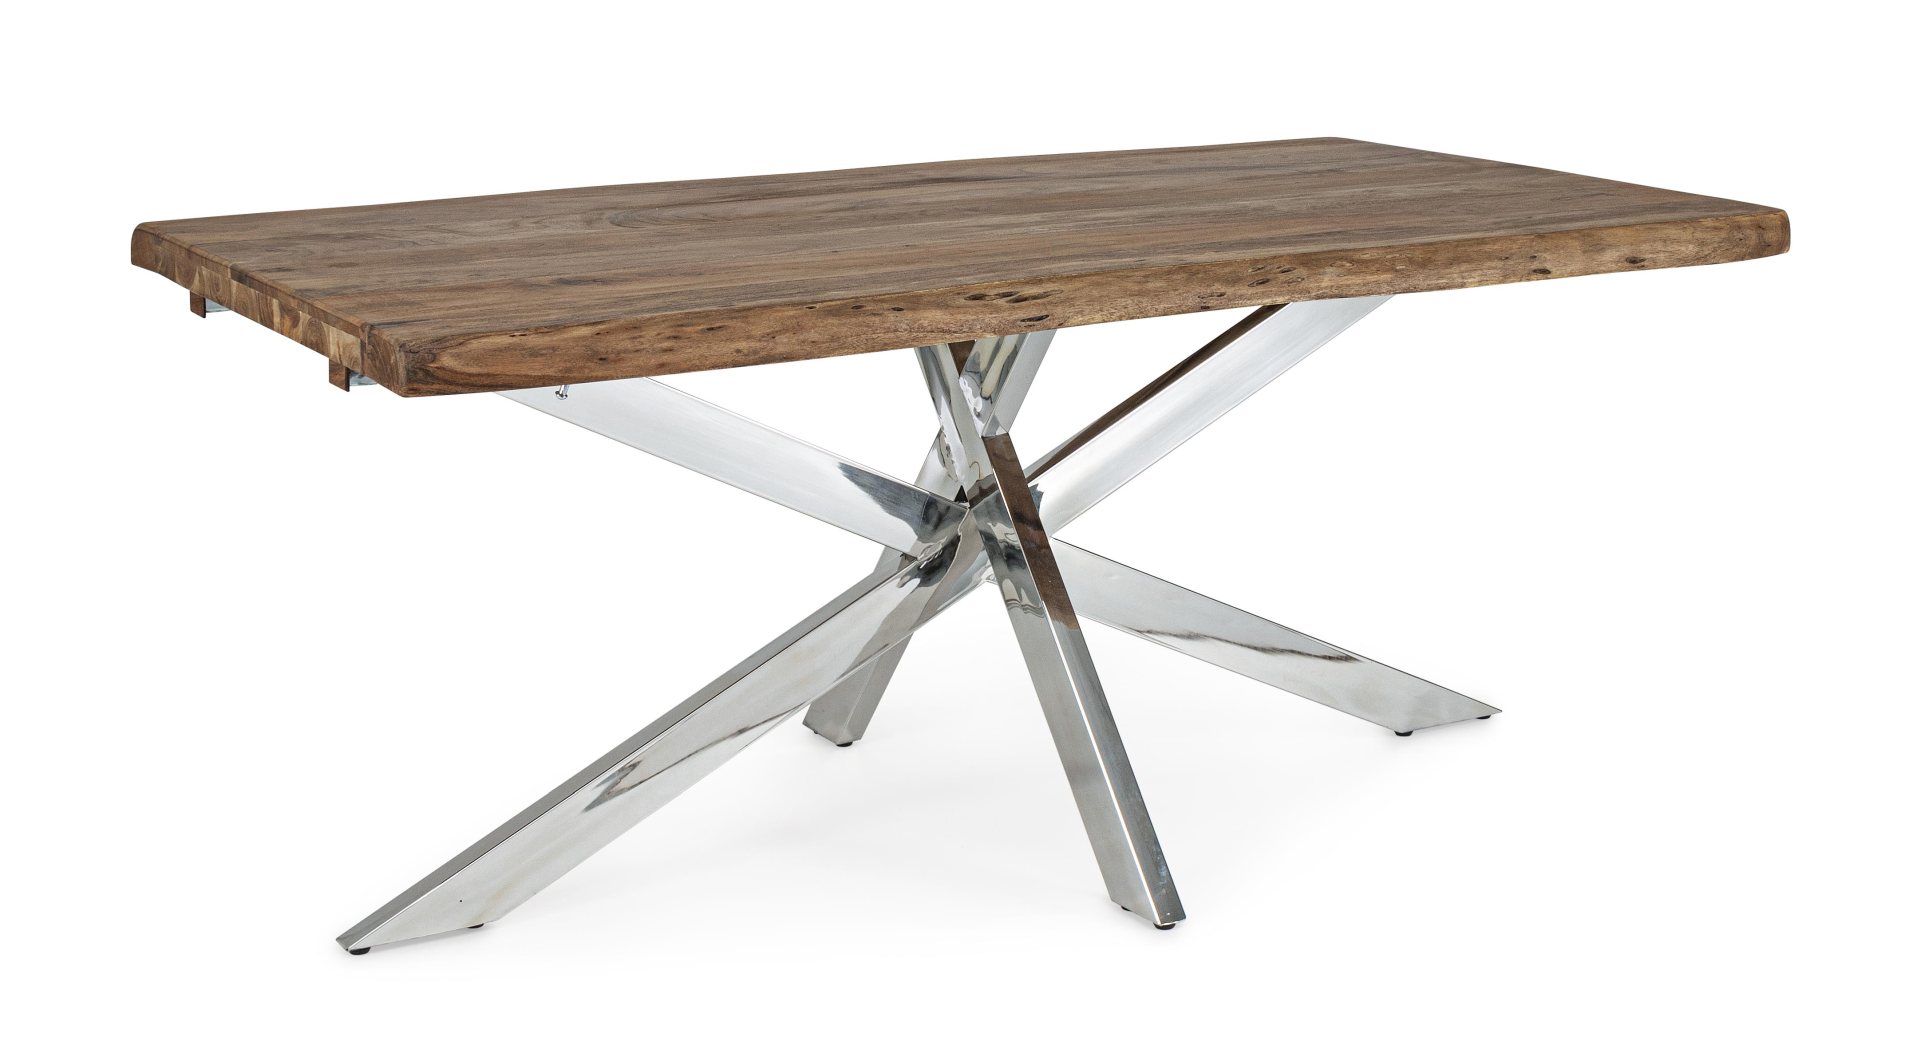 Der Esstisch Arkansas überzeugt mit seinem modernem Design. Gefertigt wurde er aus Akazienholz, welches einen natürlichen Farbton besitzt. Das Gestell ist aus Metall und hat einen silbernen Farbton. Der Tisch ist ausziehbar von einer Länge von 180 cm auf 